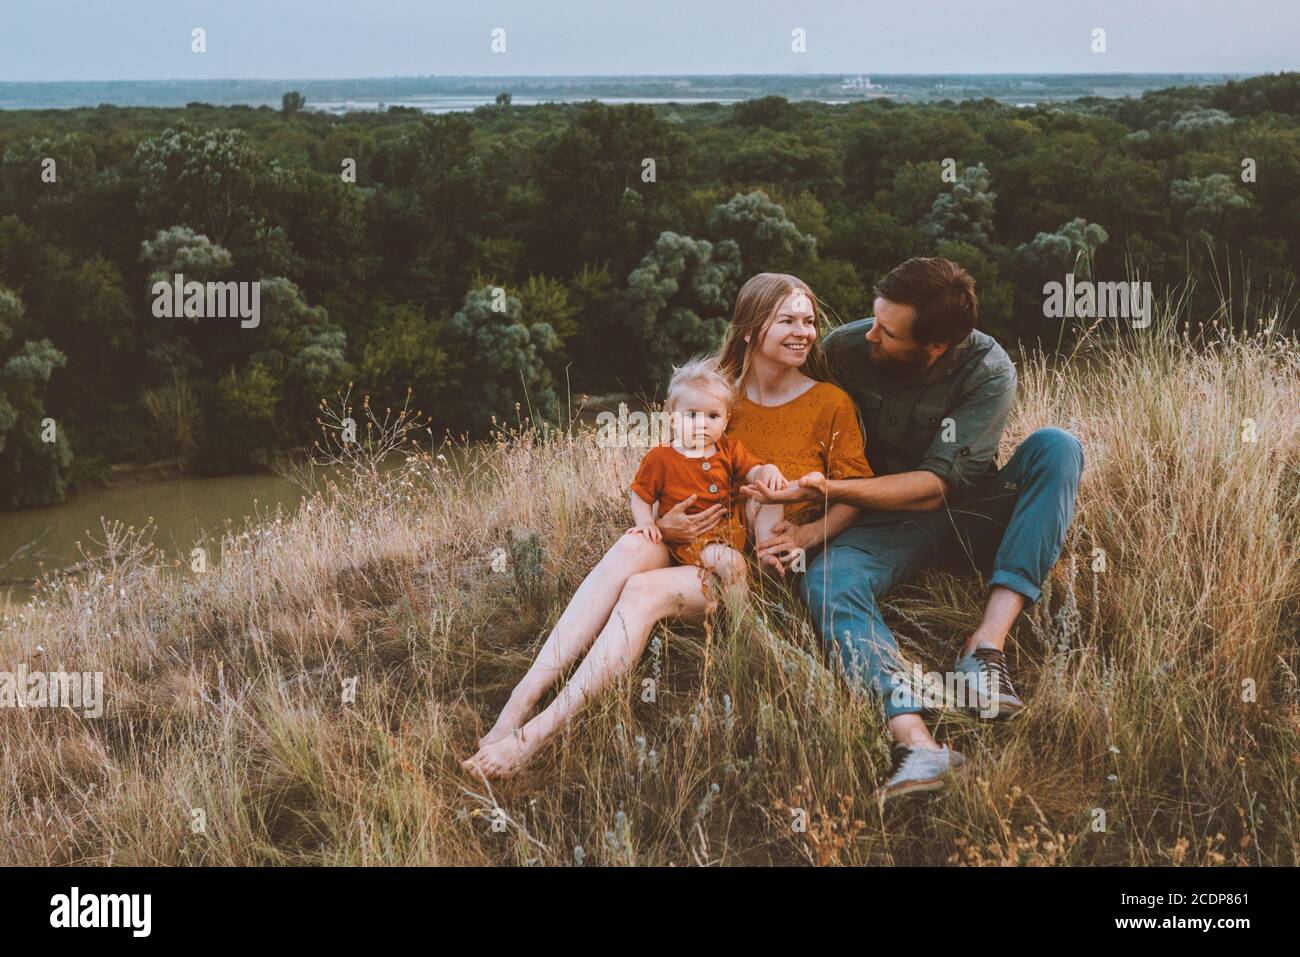 Famiglia genitori con bambino che si diverte madre e padre all'aperto con il bambino seduto su erba sano stile di vita staycation fine settimana rurale natura Foto Stock